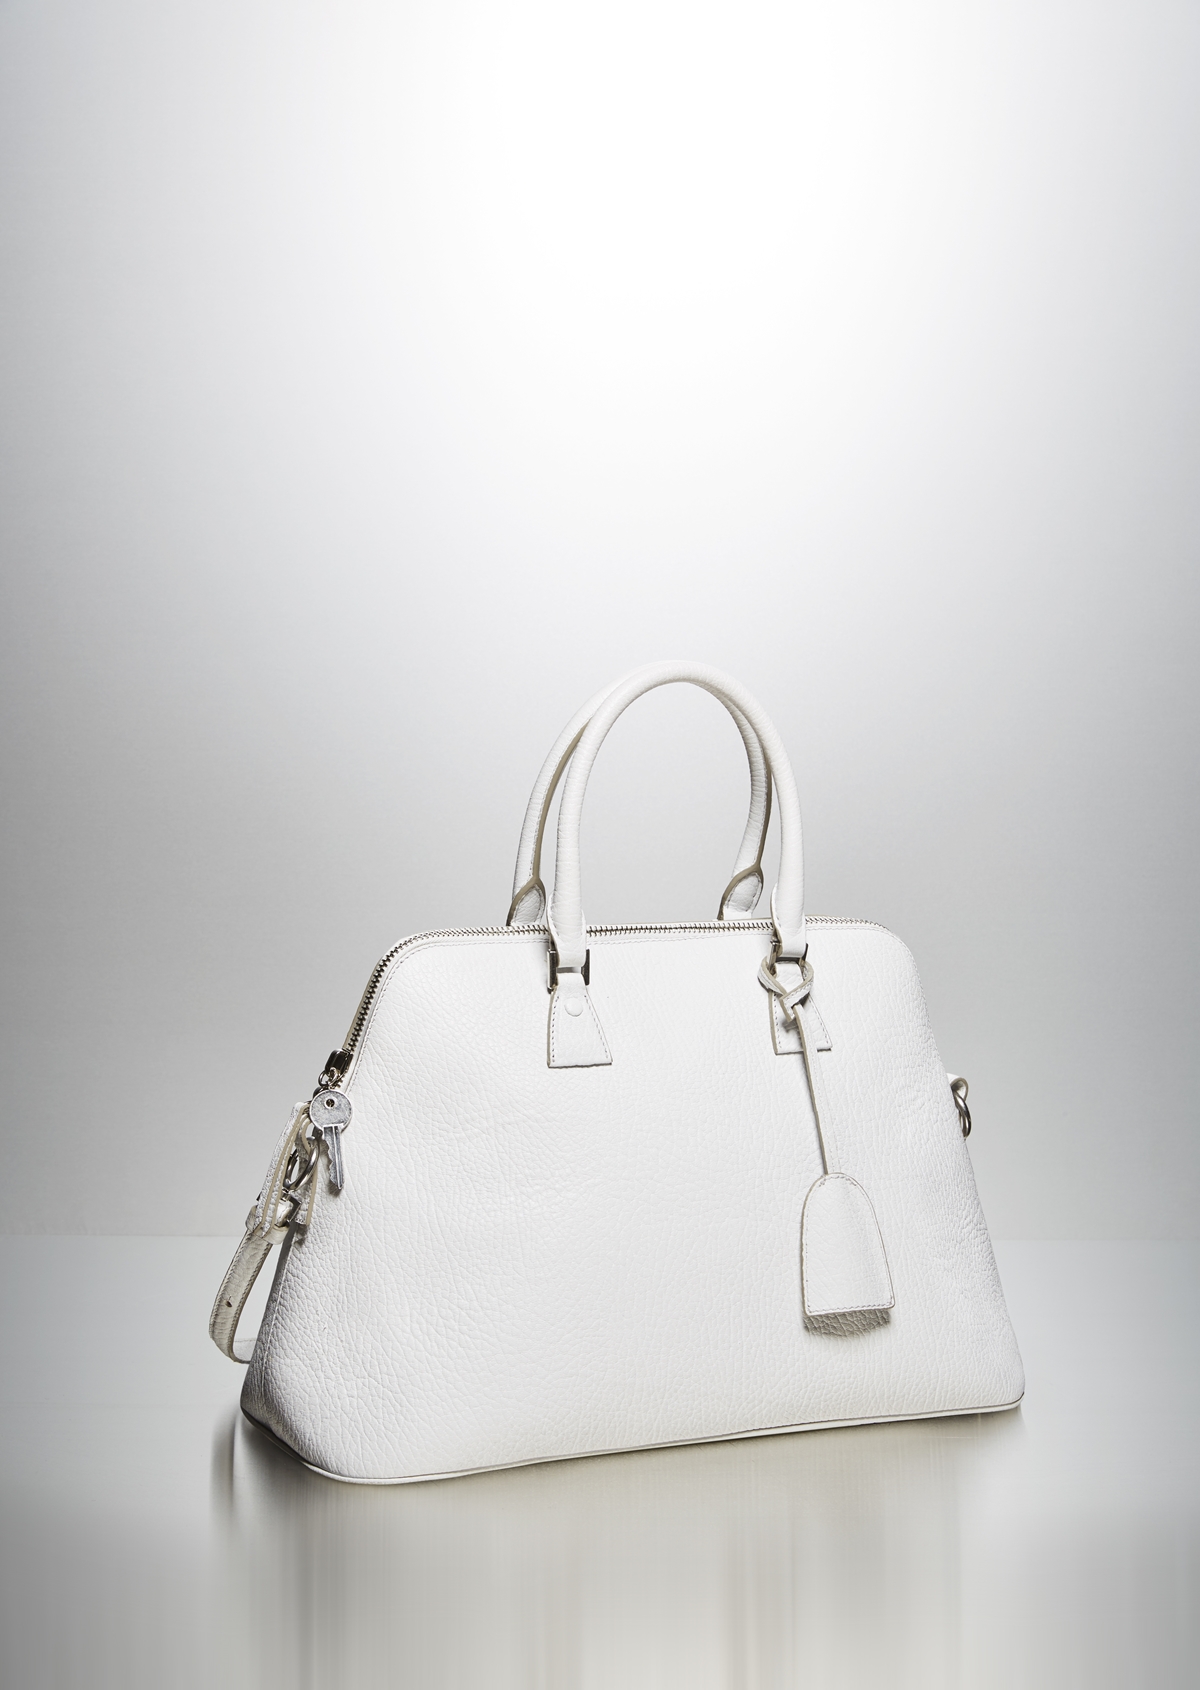 메종 마르지엘라, 새로운 핸드백 컬렉션 ‘5AC’ 출시 | 2